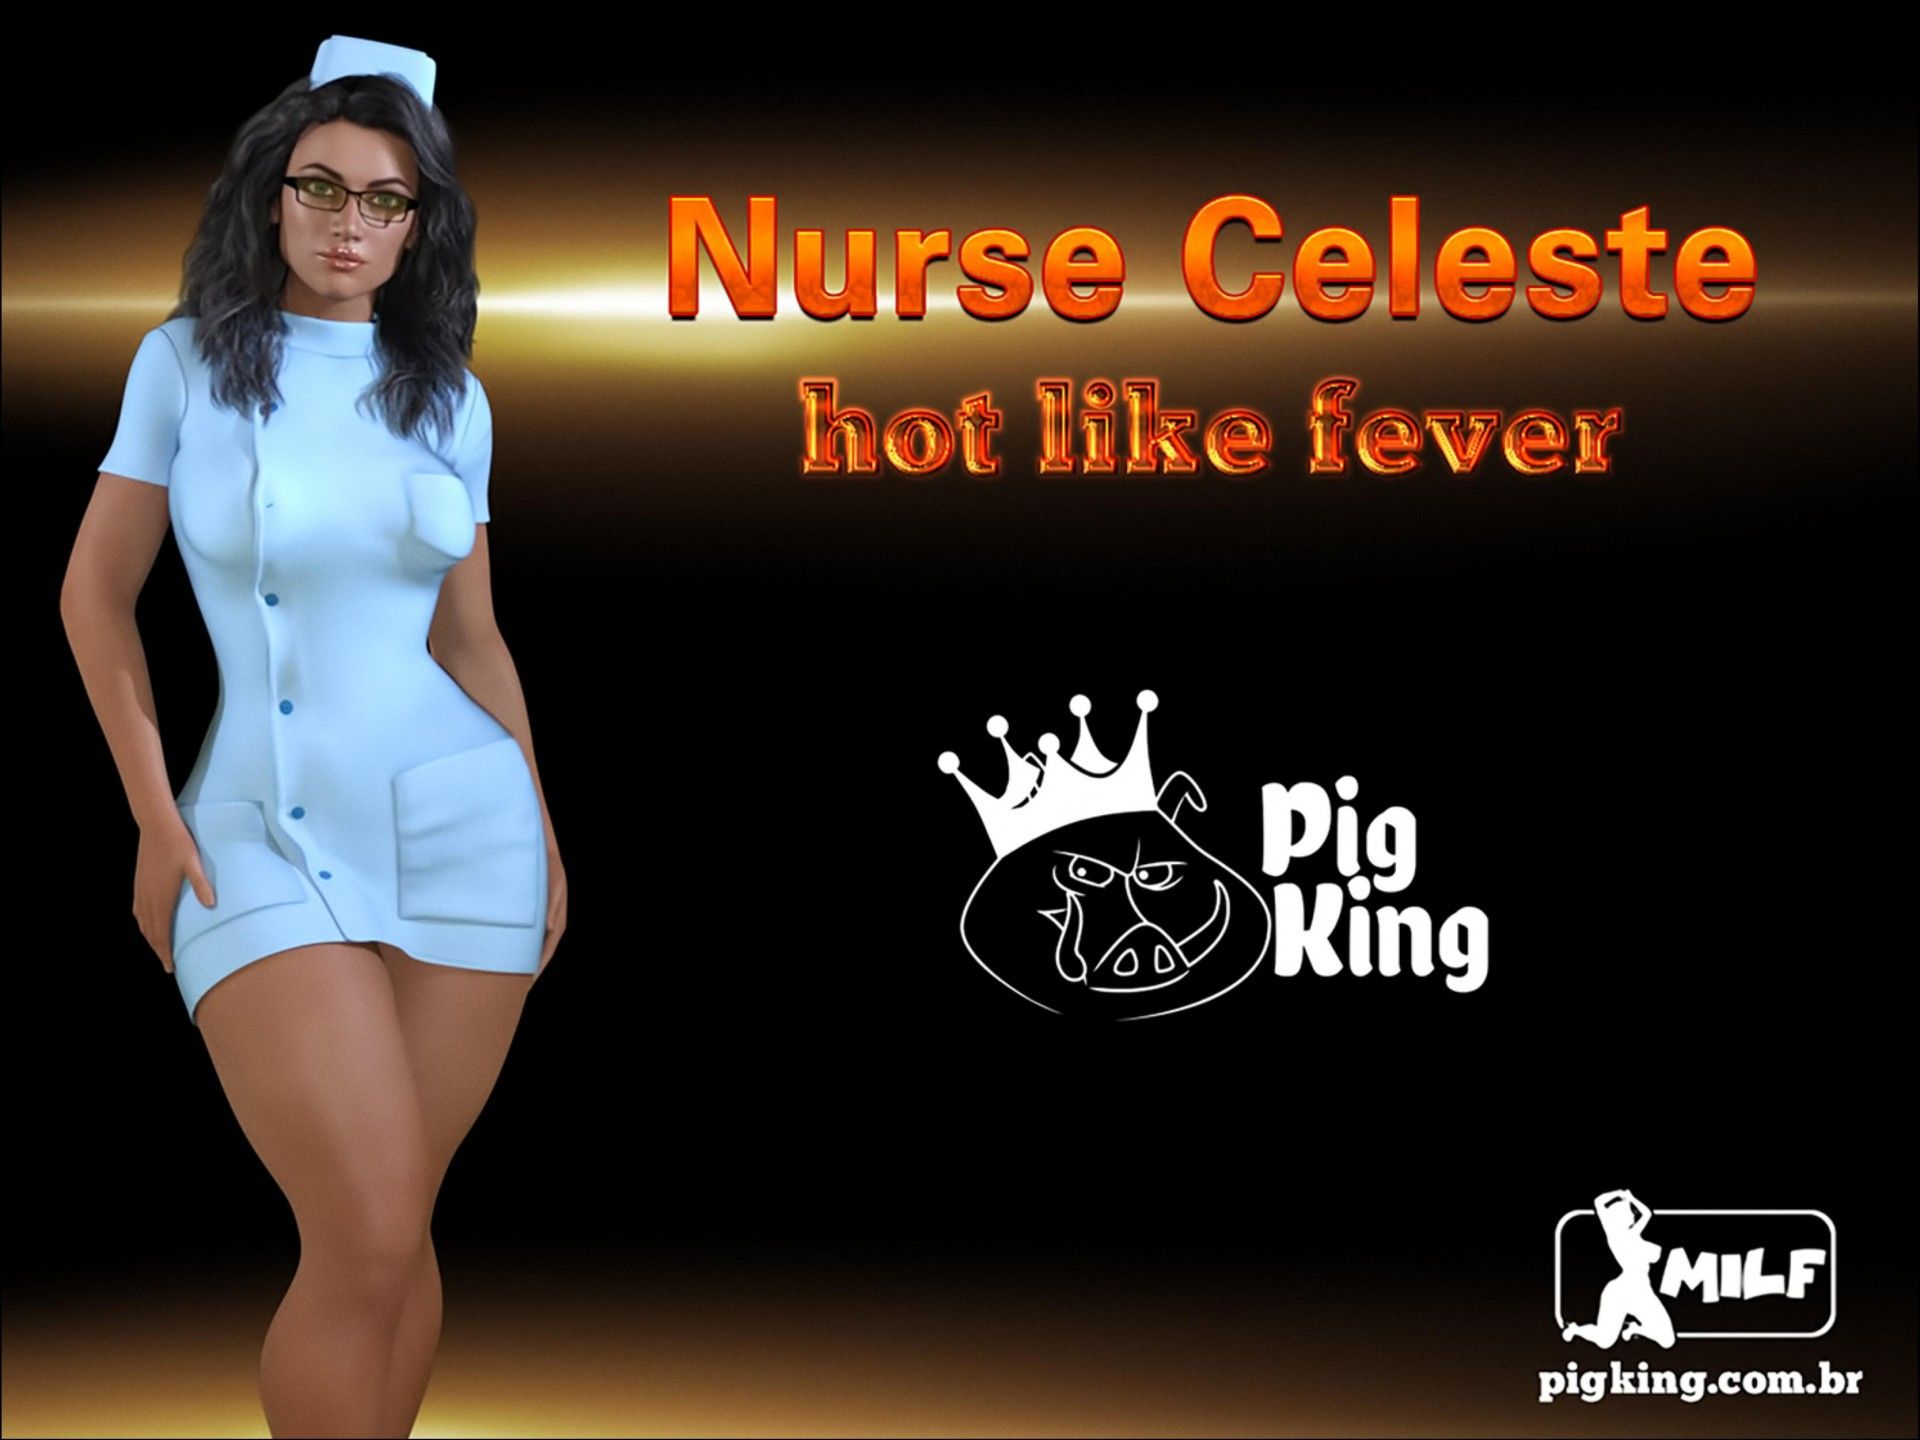 Nurse Celeste Hot Link Fever (PigKing Milf) page 1